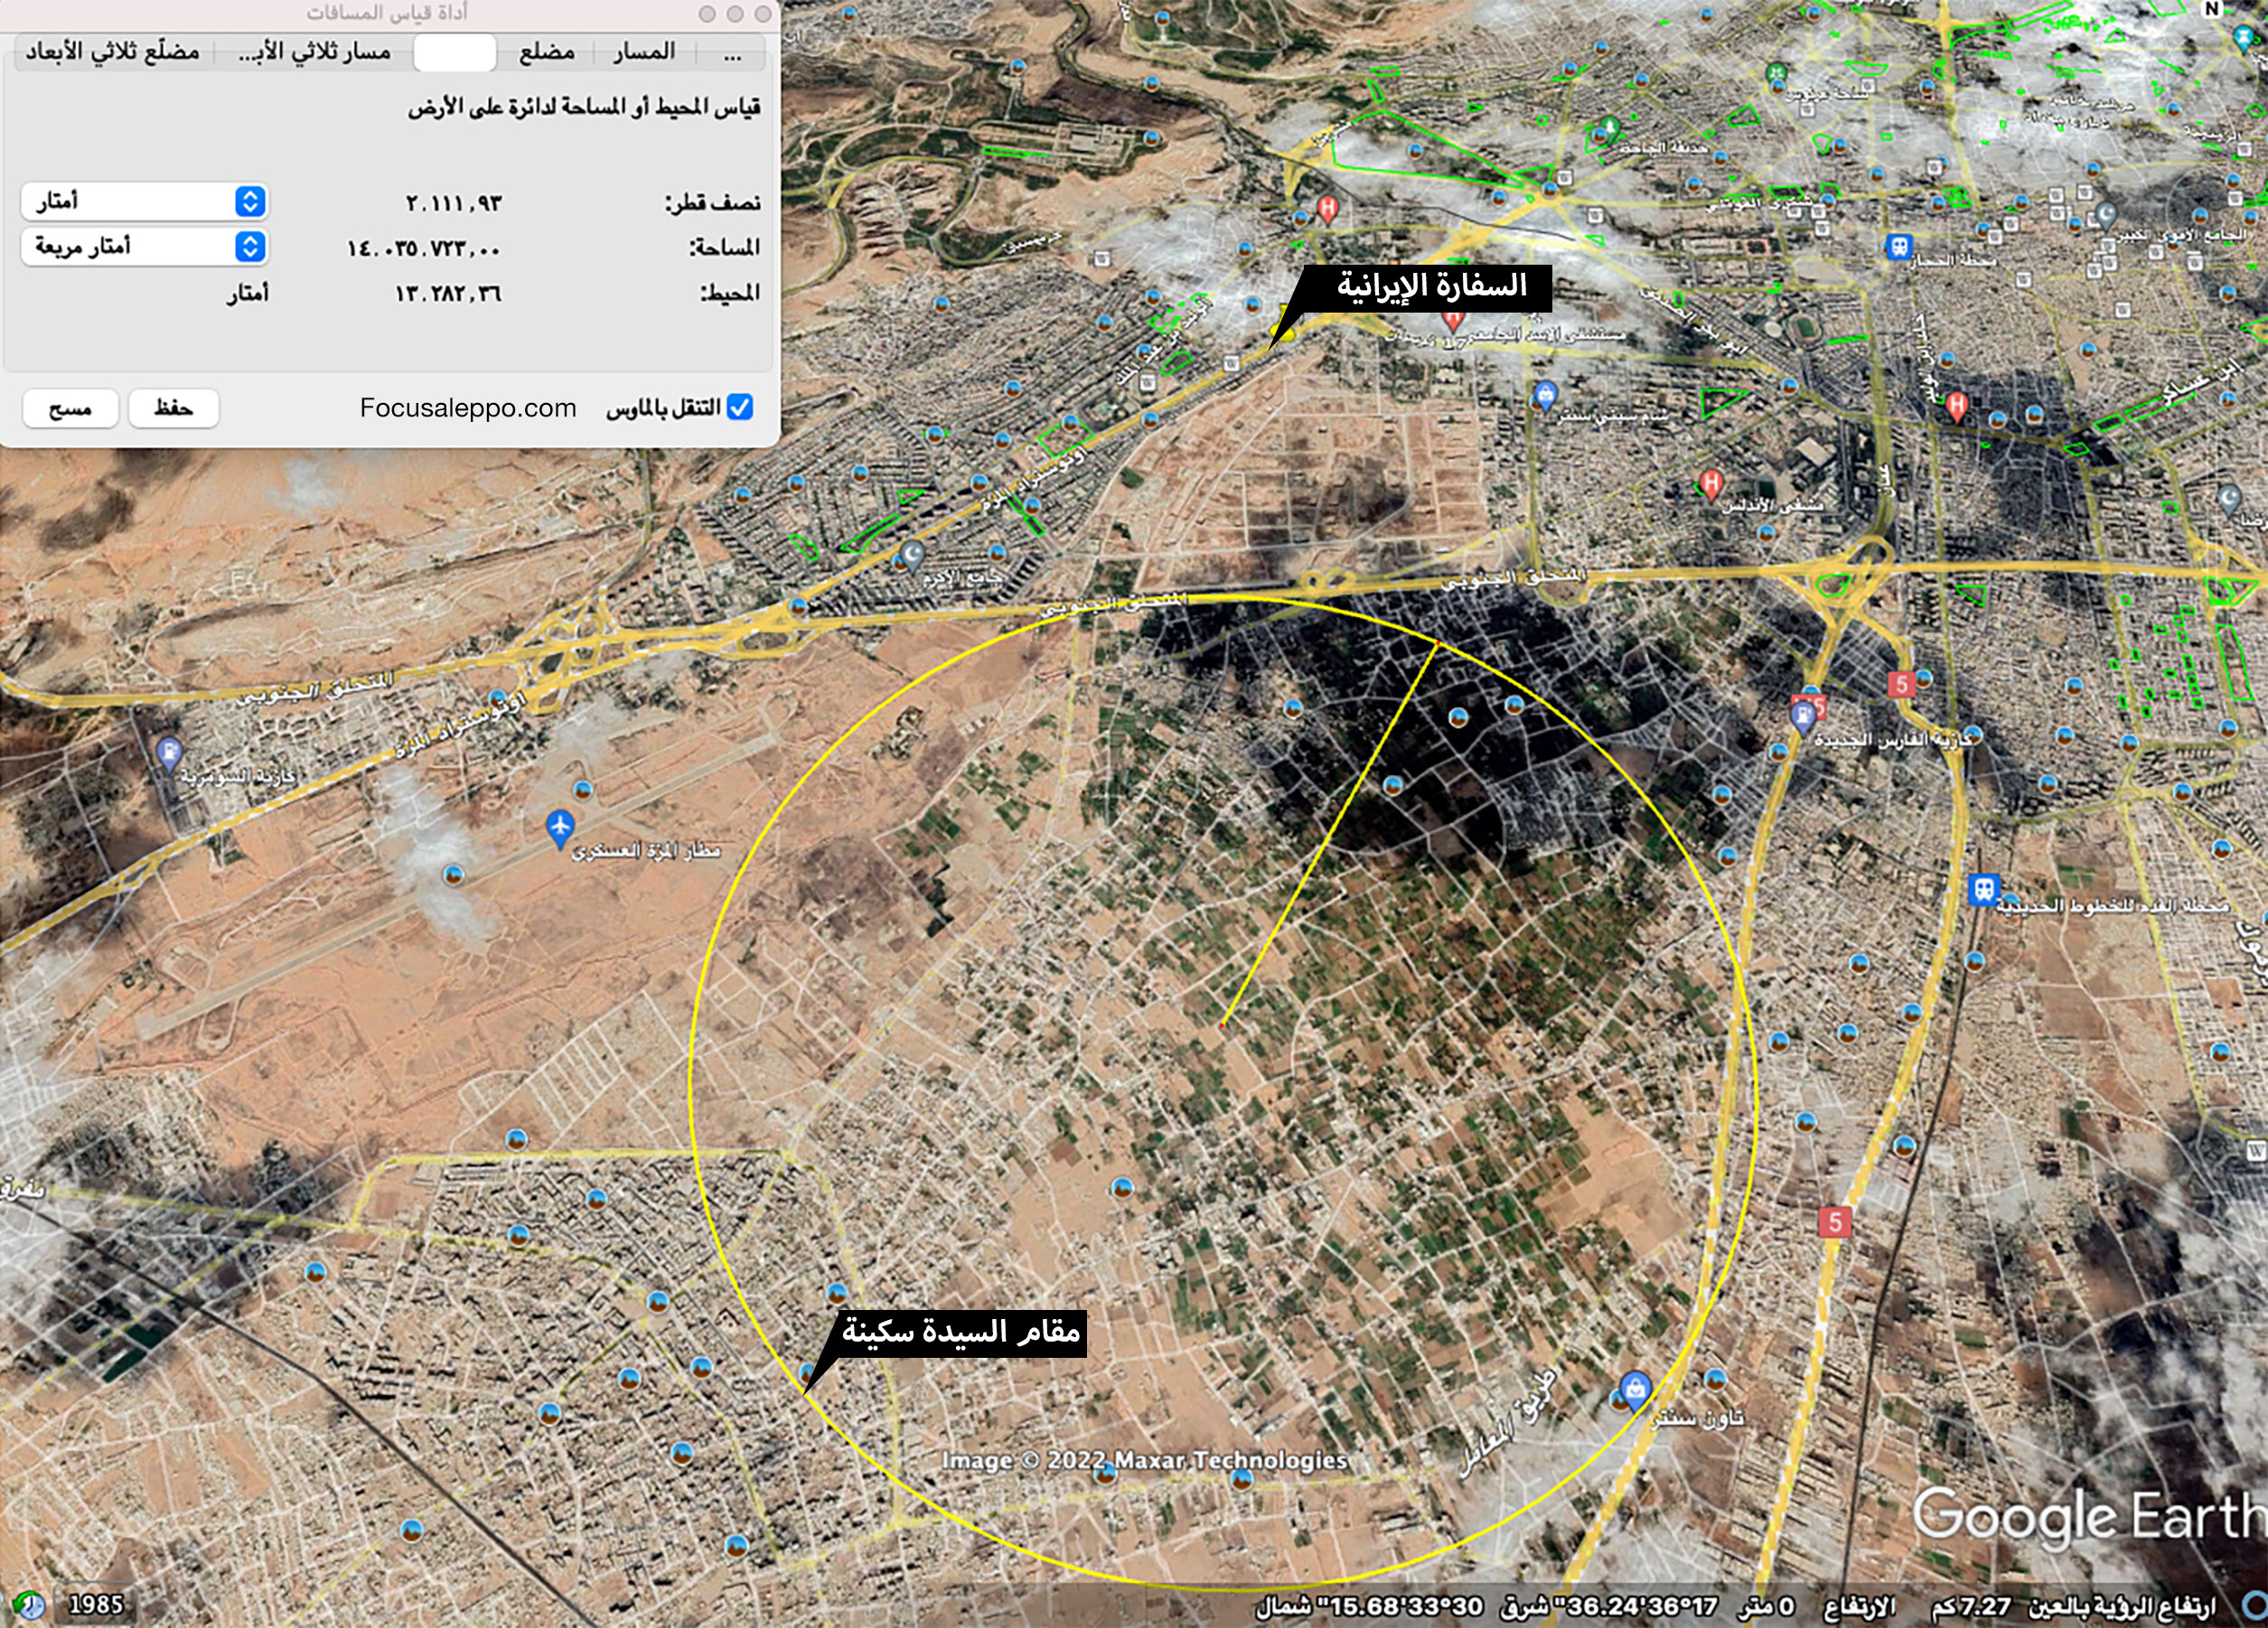 صورة أقمار صناعية توضح الدمار في محيط المنطقة الممتدة من السفارة الإيرانية إلى مطار المزة العسكري ومحيط مقام السيدة سكينة.